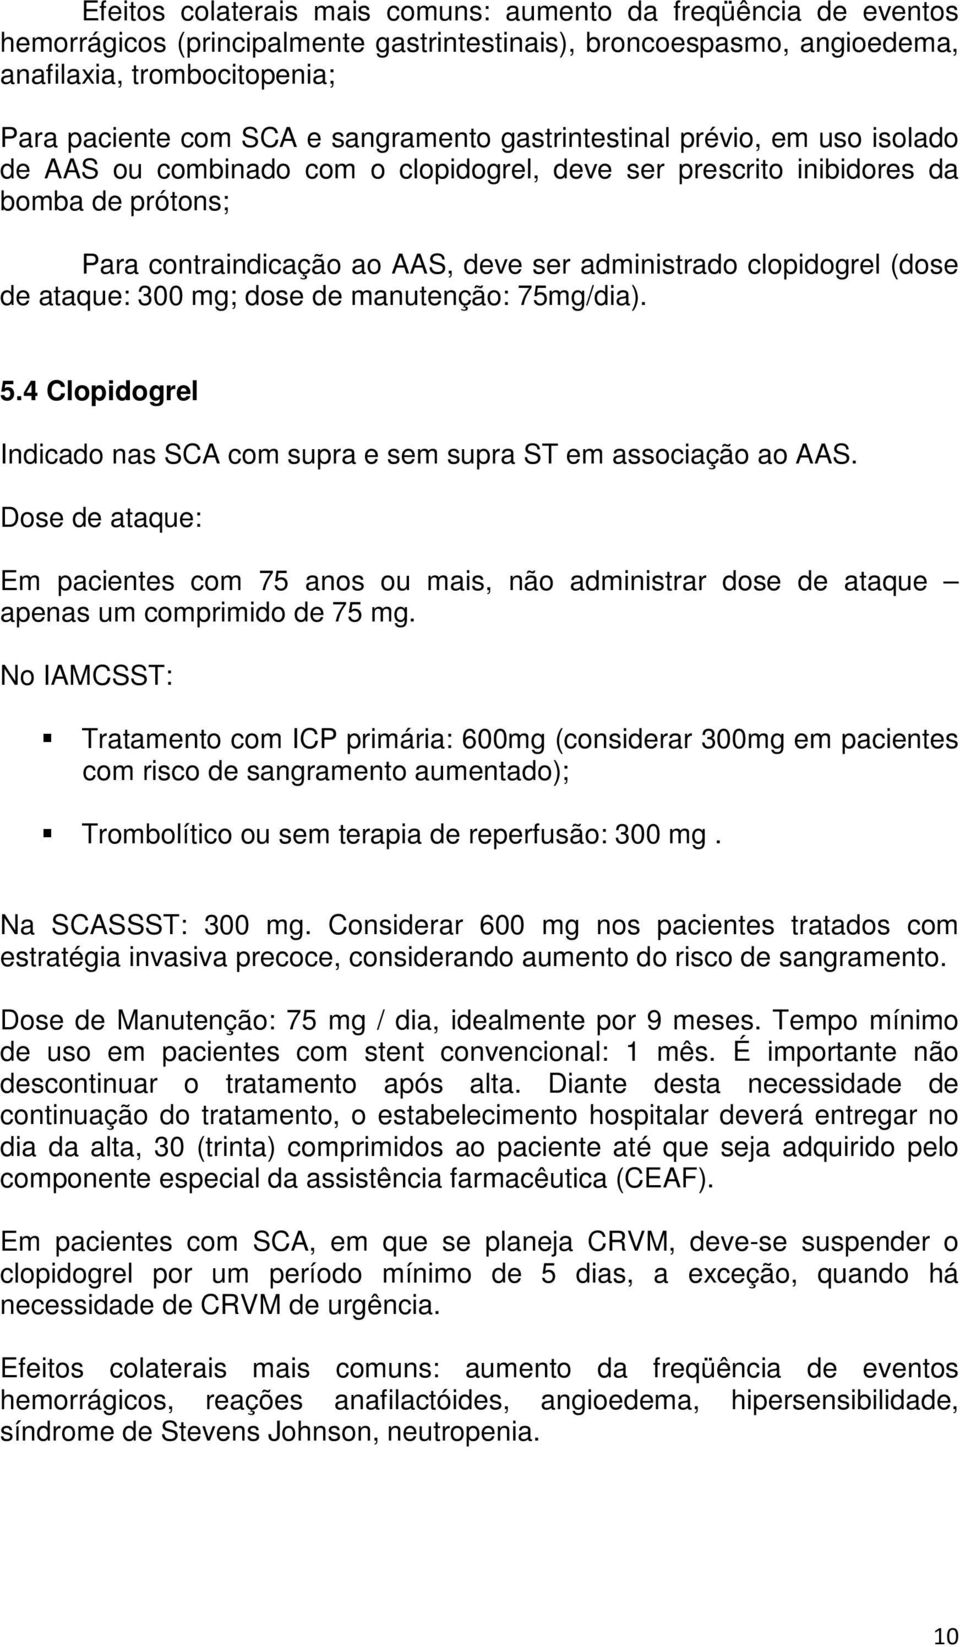 clopidogrel (dose de ataque: 300 mg; dose de manutenção: 75mg/dia). 5.4 Clopidogrel Indicado nas SCA com supra e sem supra ST em associação ao AAS.